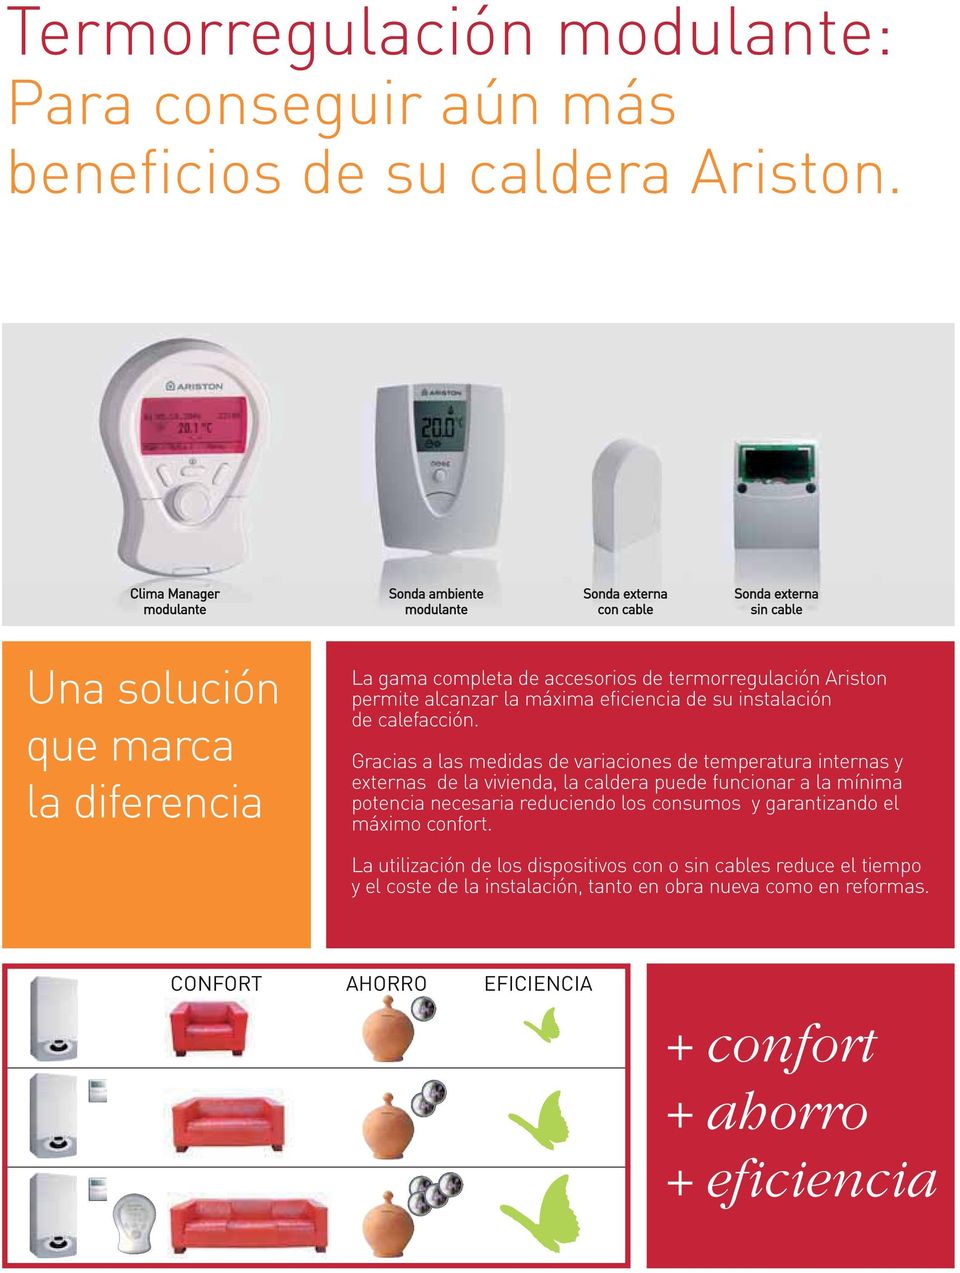 Ariston permite alcanzar la máxima eficiencia de su instalación de calefacción.